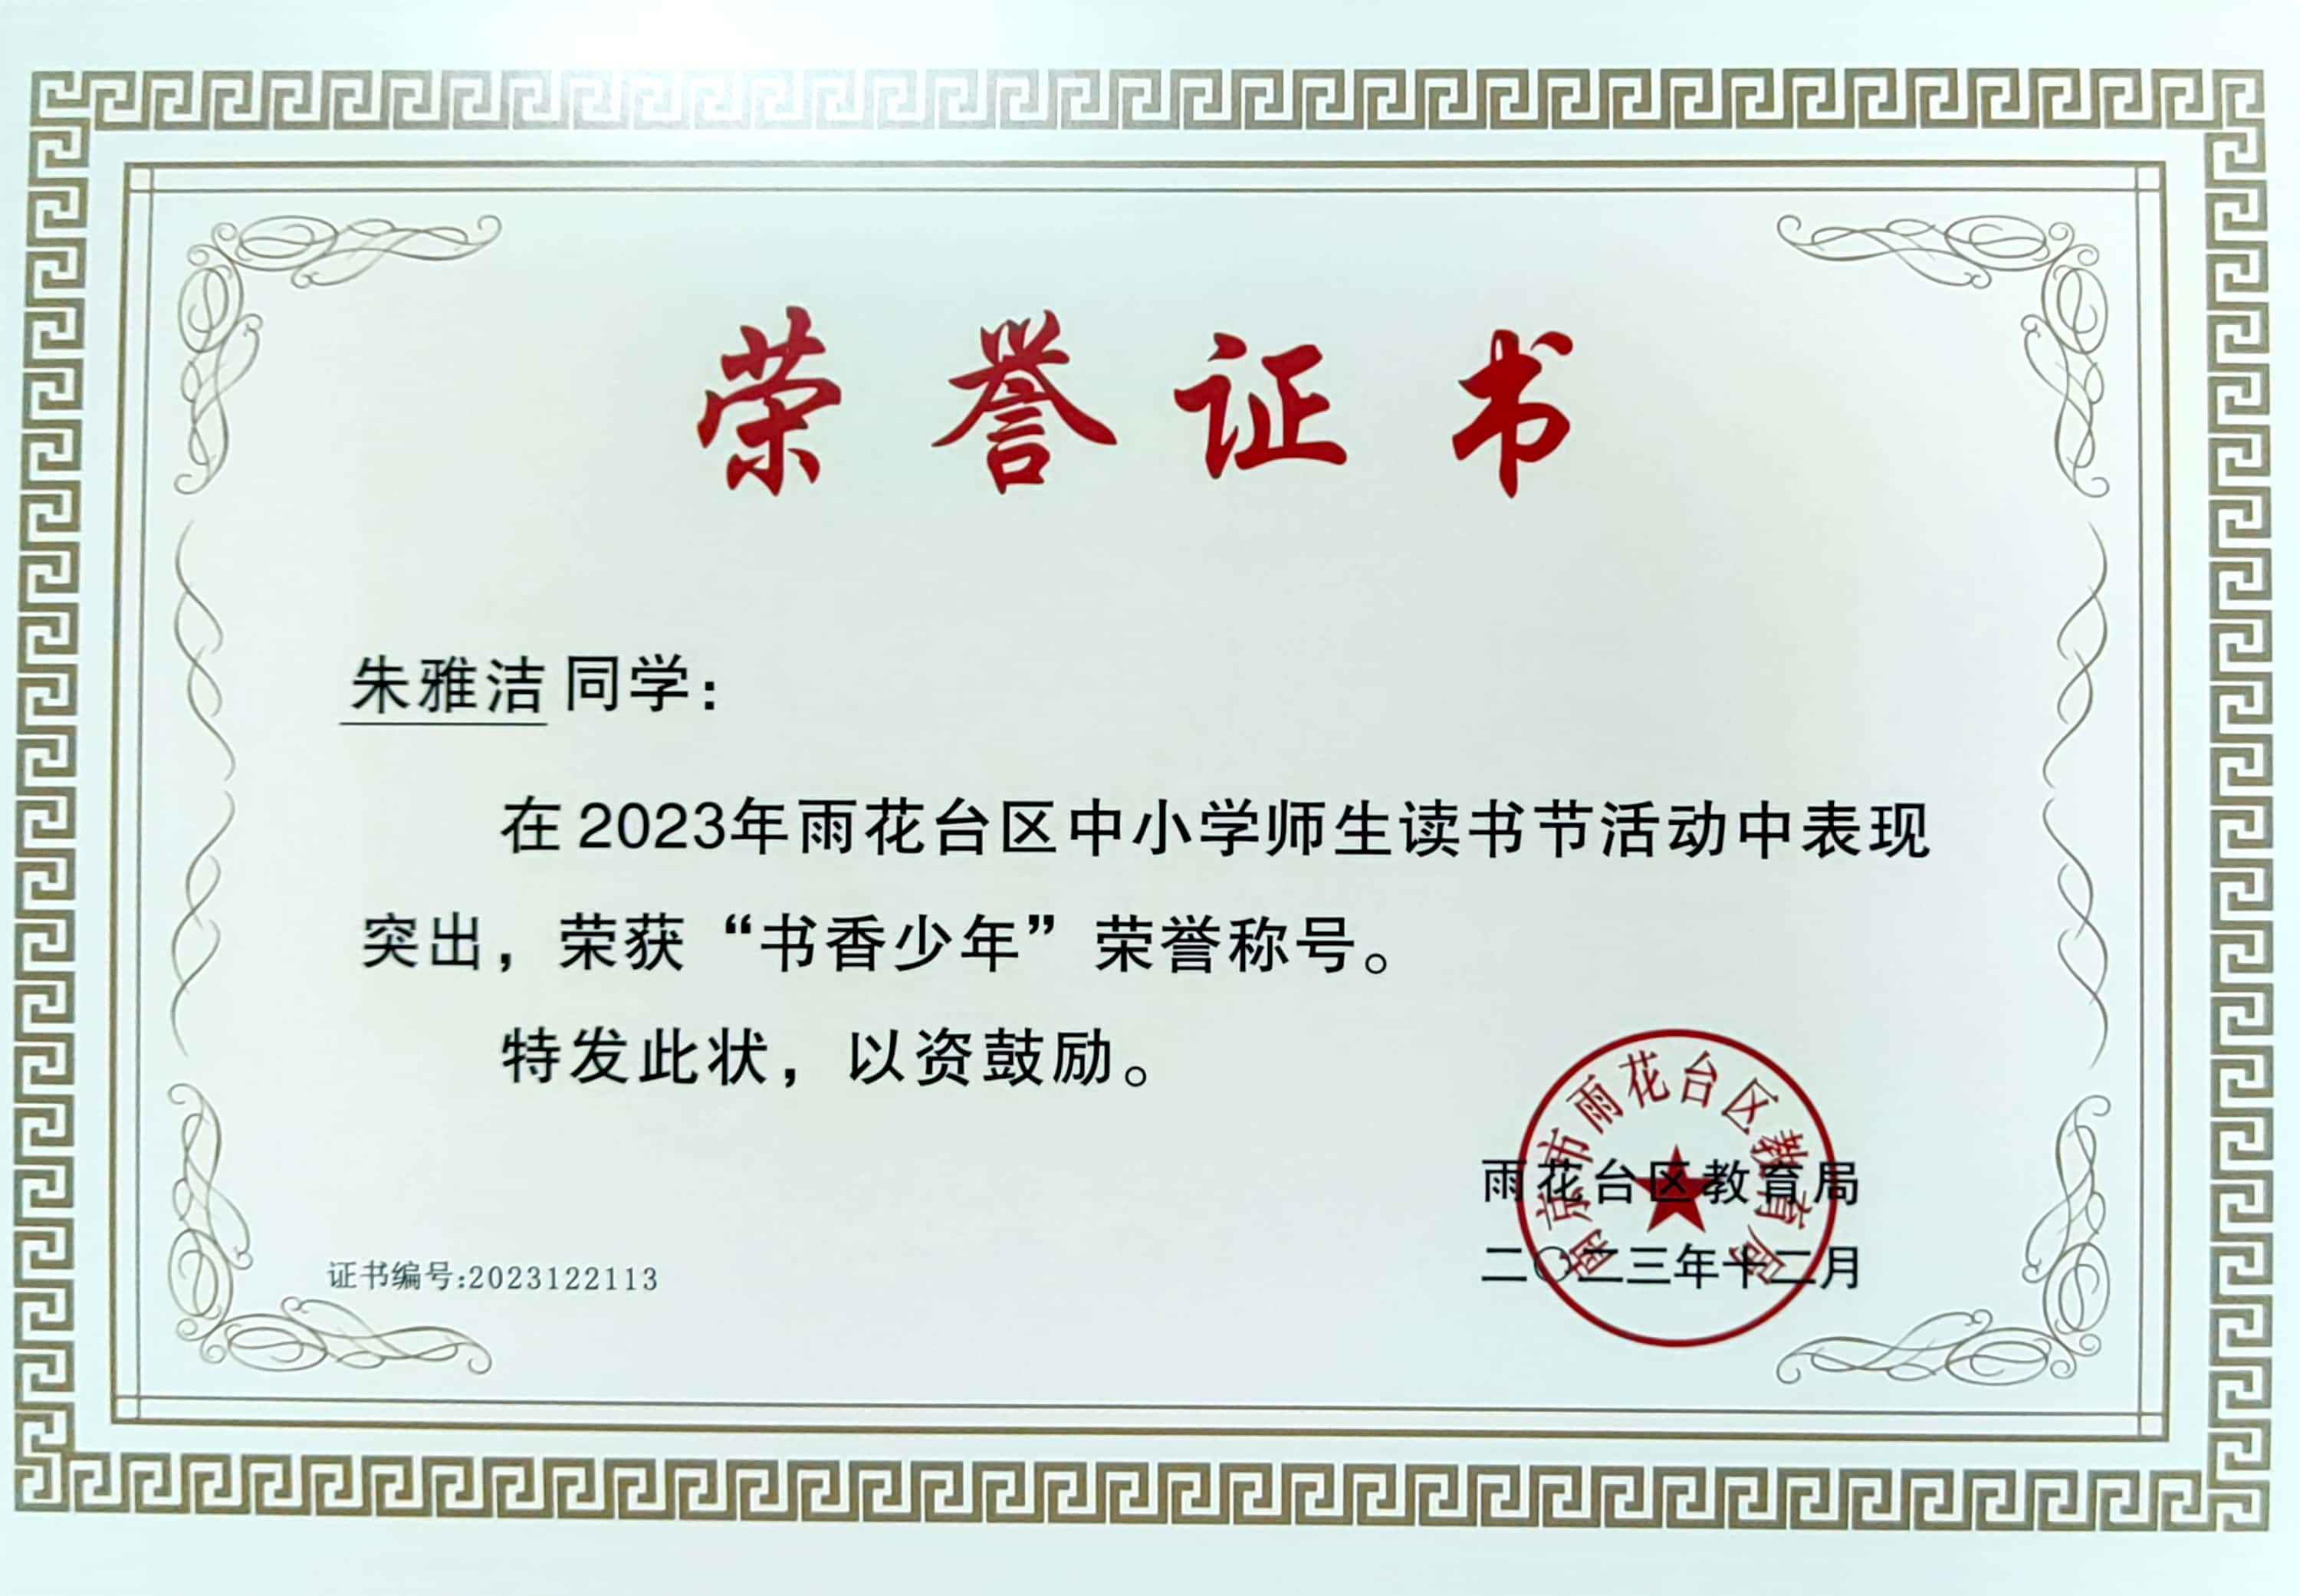 朱雅洁同学在2023年雨花台区中小学师生读书节活动中表现突出，荣获“书香少年”荣誉称号.jpg